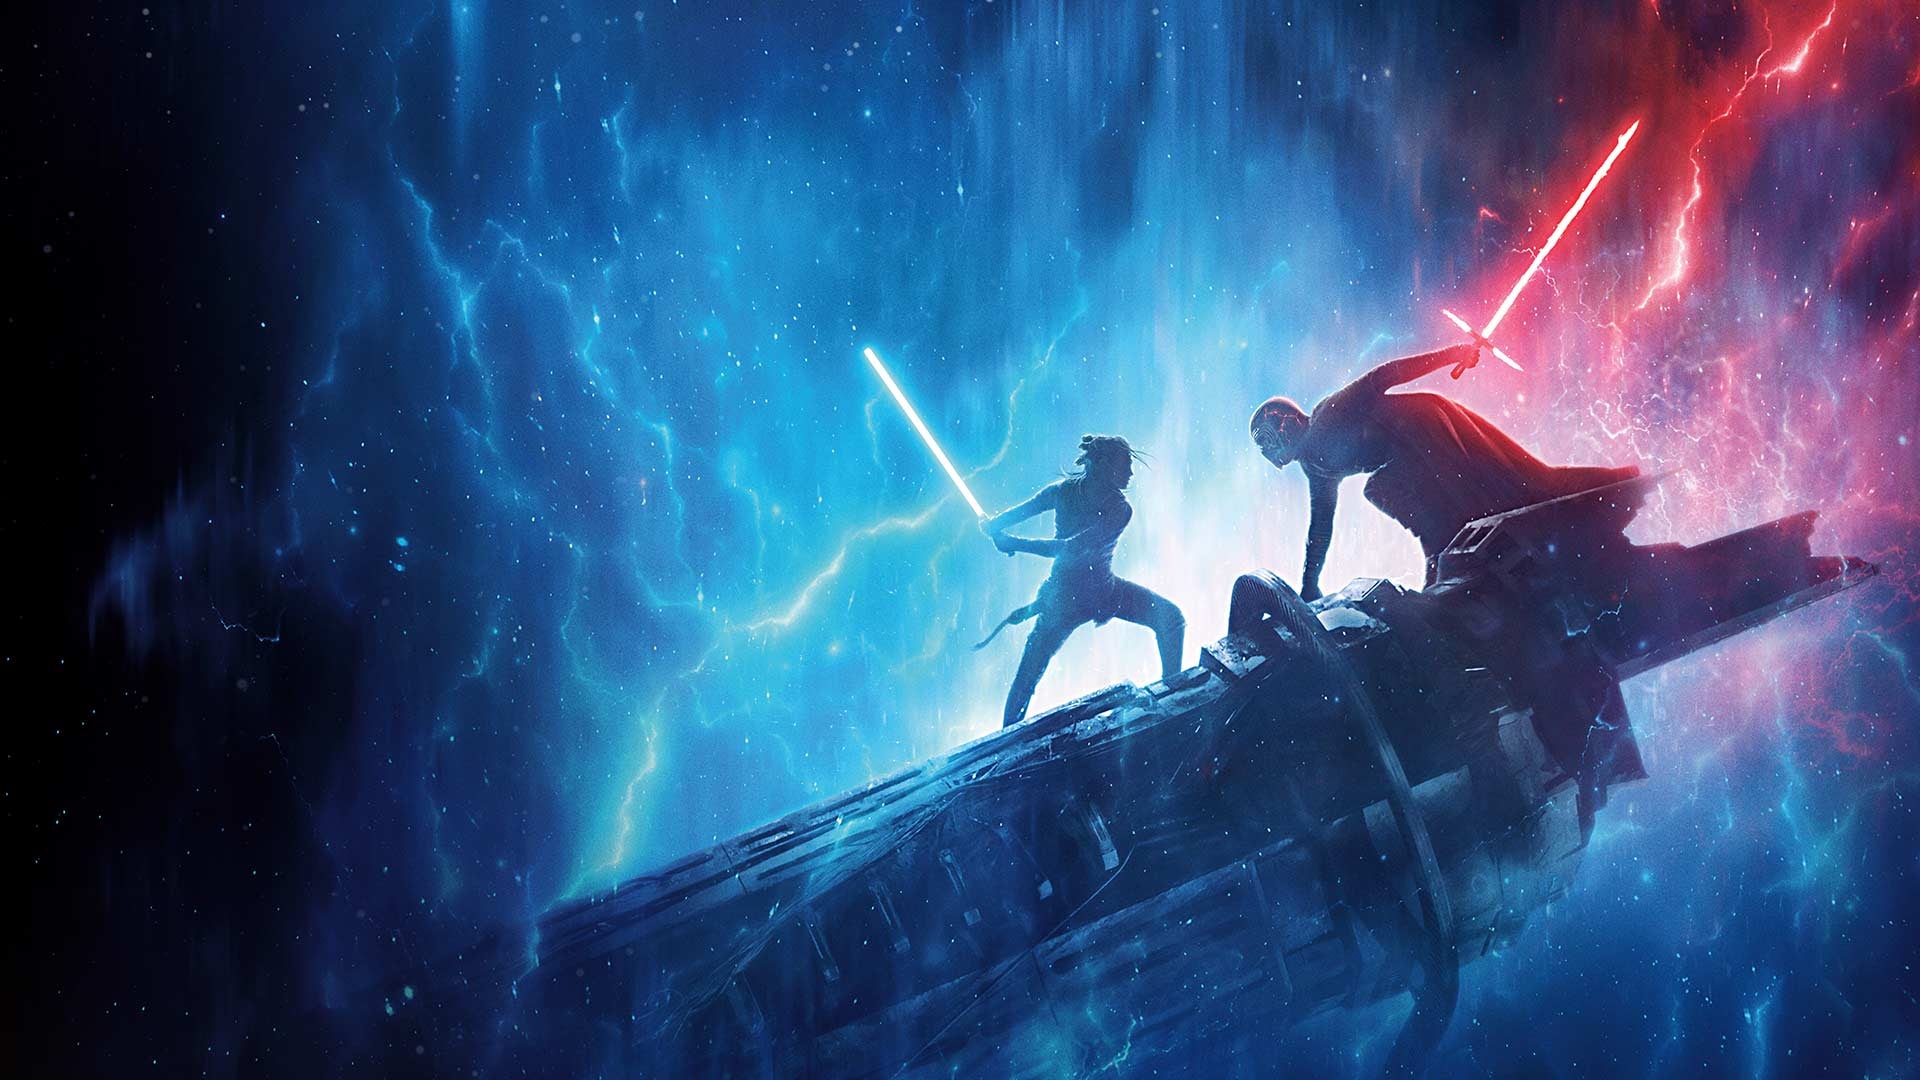 الملصق الرئيسي لـ Star Wars Episode IX: The Rise of Skywalker.